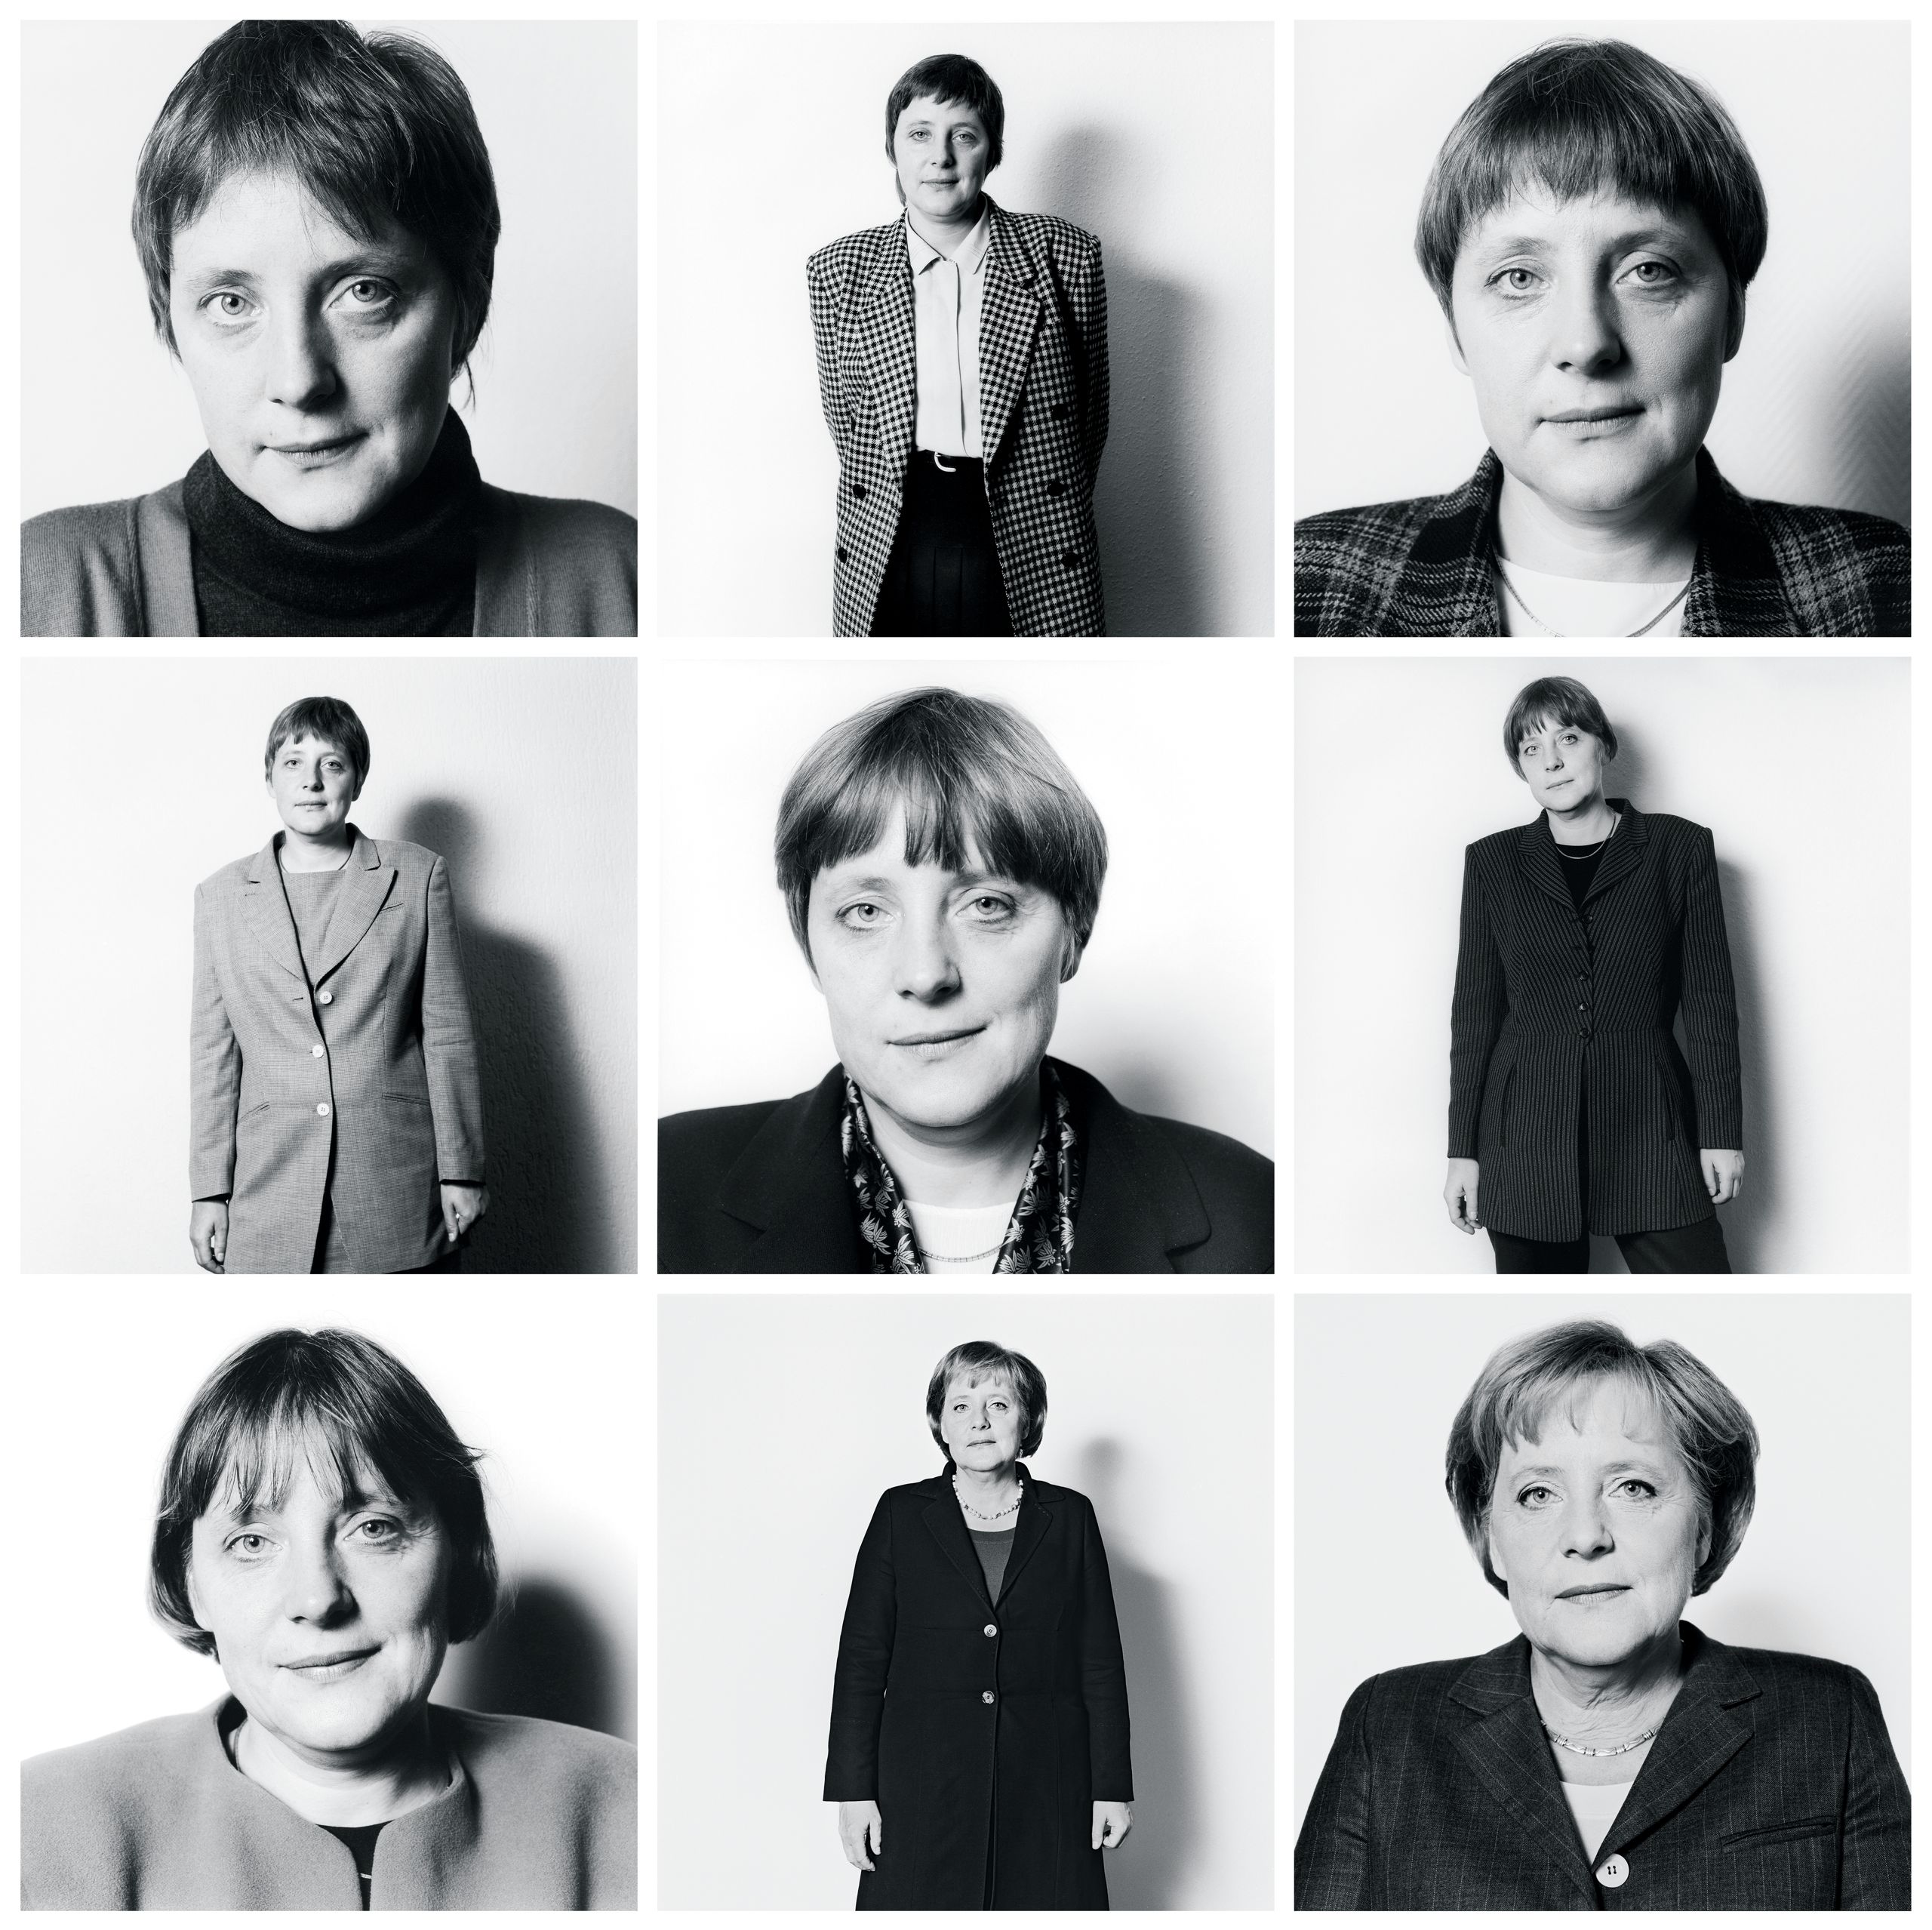 آنگلا مرکل (Angela Merkel) سیاستمداری آلمانی است که به خاطر دوران طولانی حضورش در جایگاه صدراعظم آلمان و معمار اتحادیه اروپا شناخته می شود.